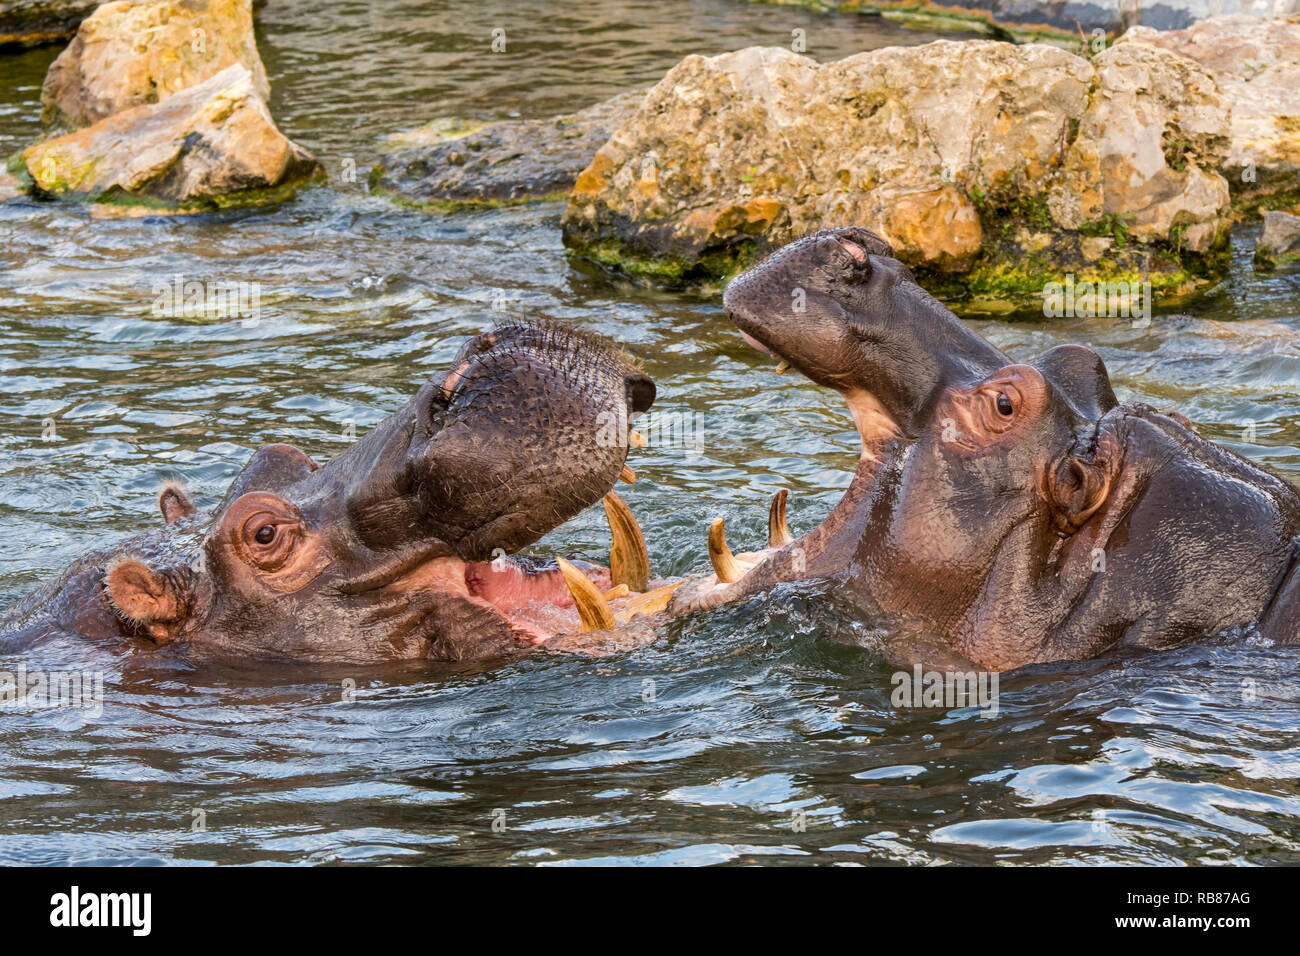 Bekämpfung von Flusspferden/Flusspferde (Hippopotamus amphibius) im See Ansicht des riesigen Zähne und großen Eckzahn Hauer in weit geöffneter Mund Stockfoto